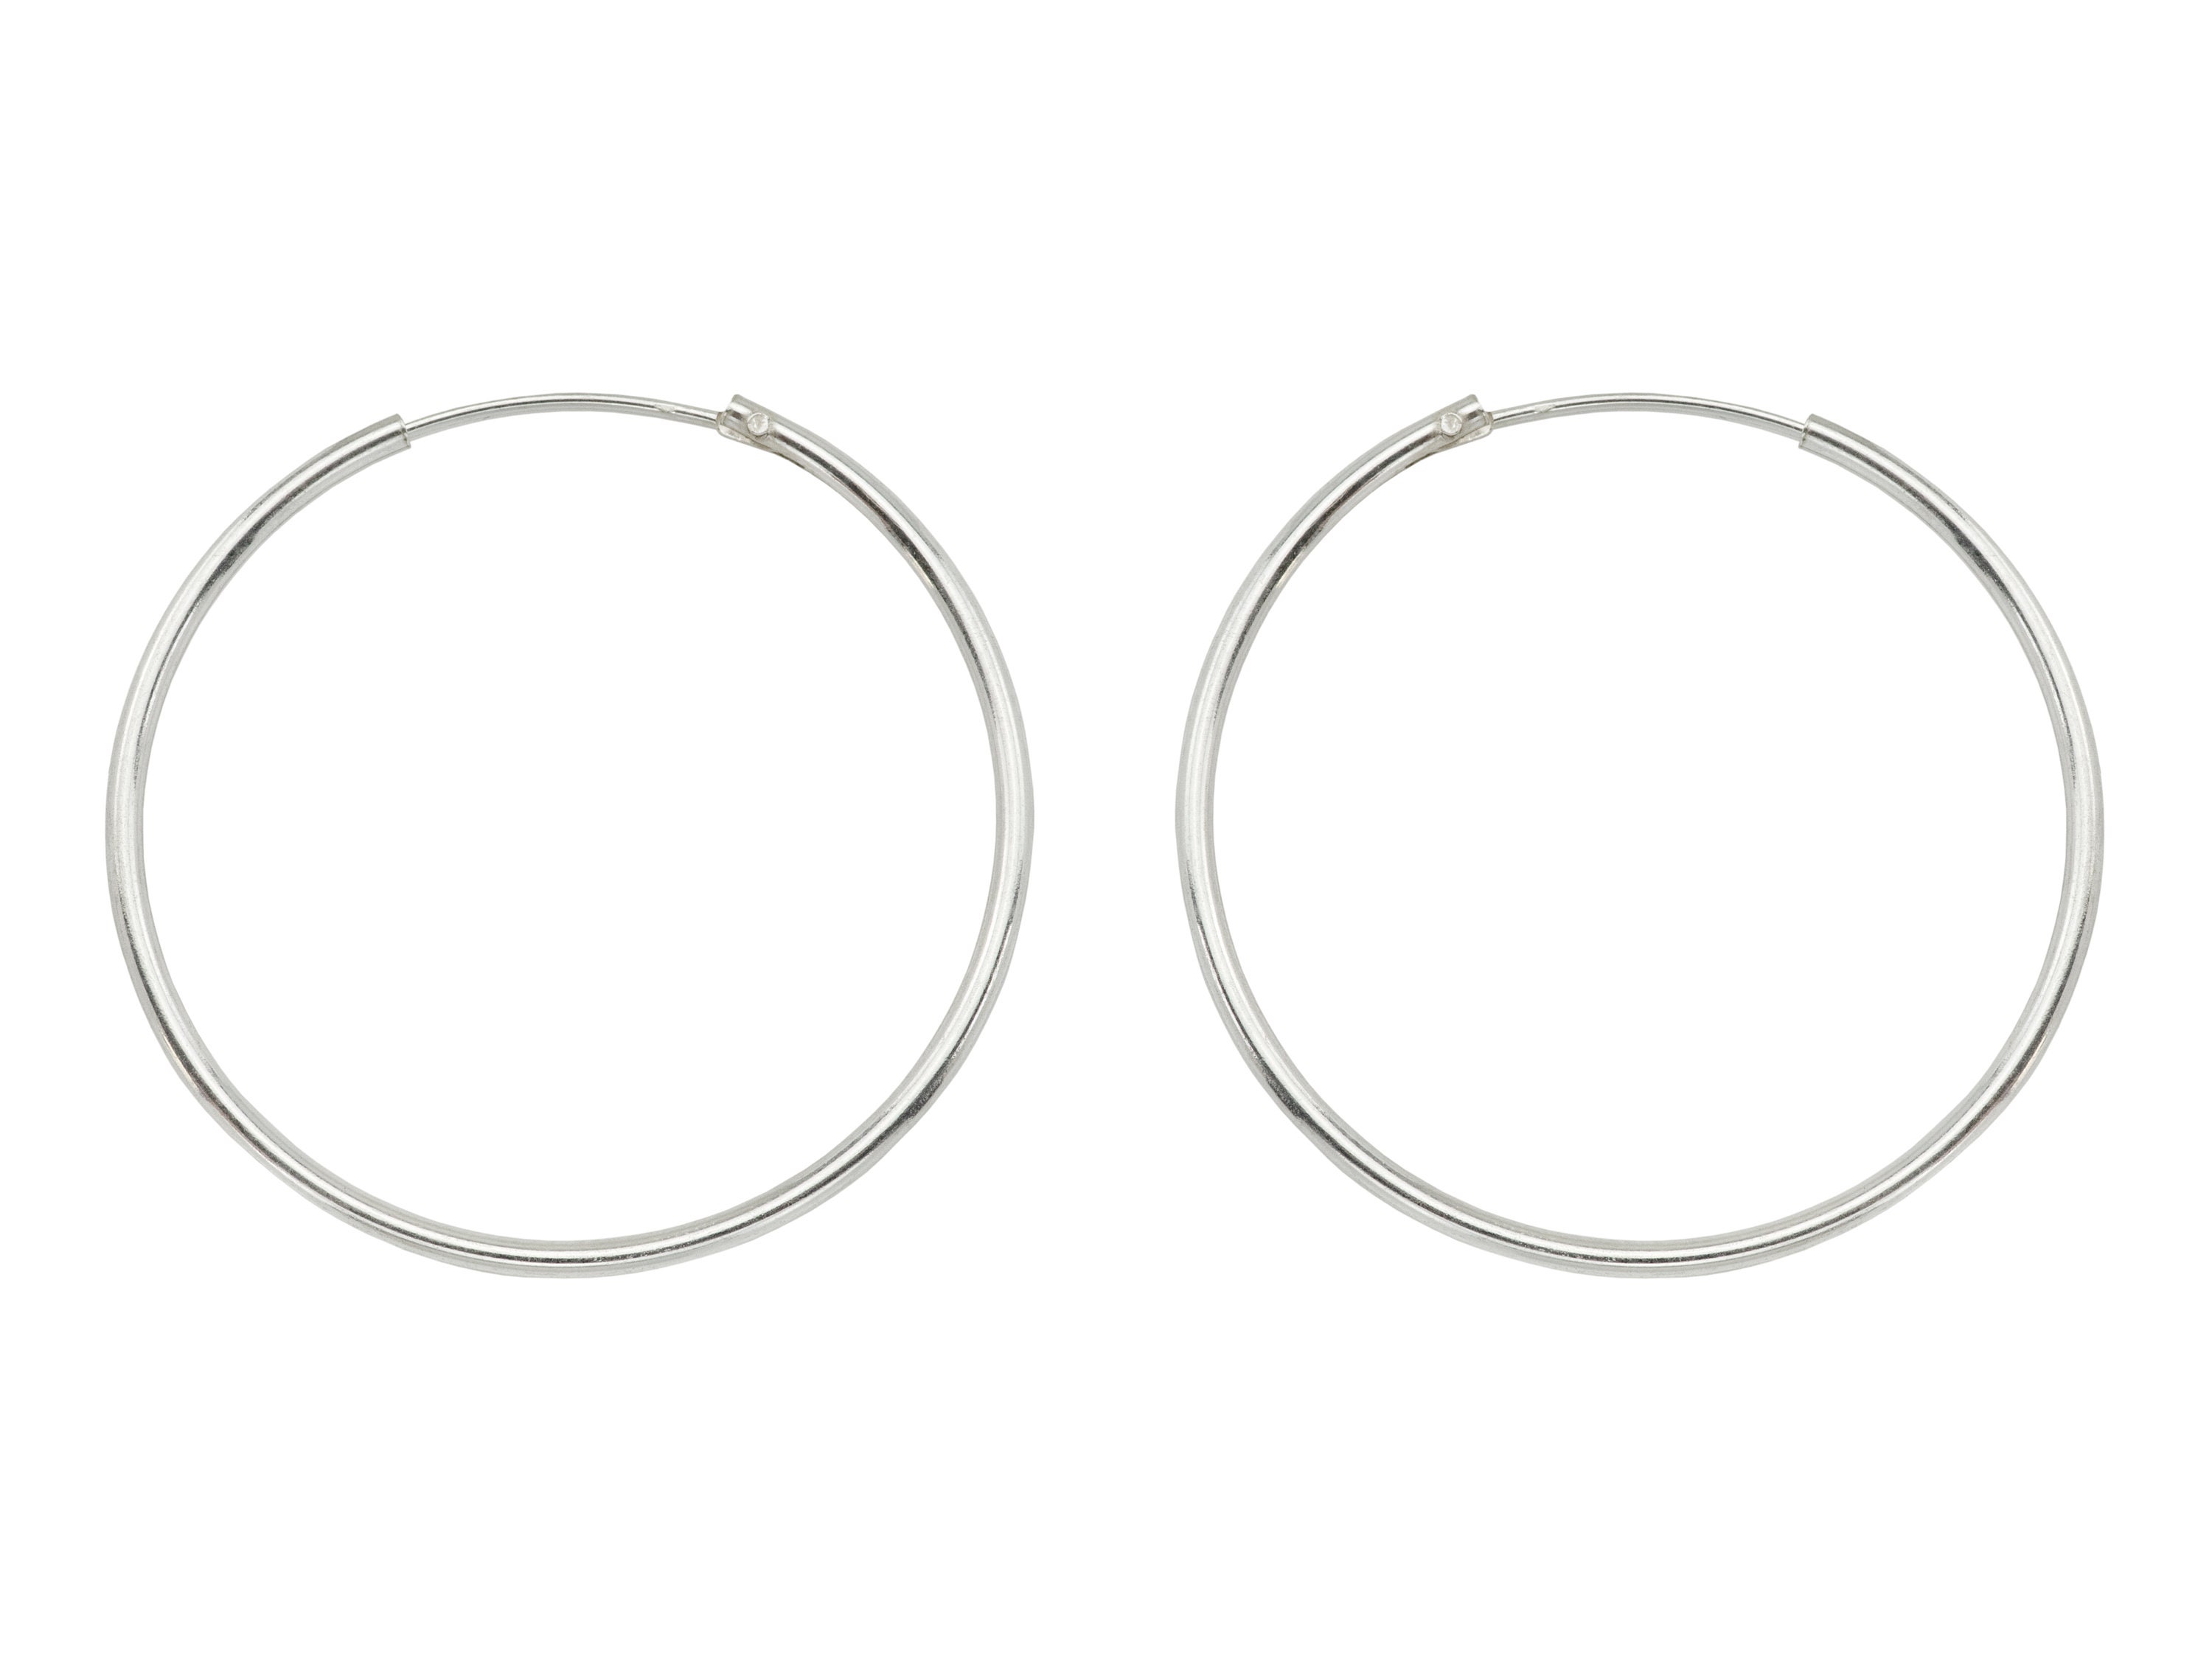 Hoop Earring with 1 loop-30mm hoop-Earring Findings-Earring connector-Qty 1 PAIR